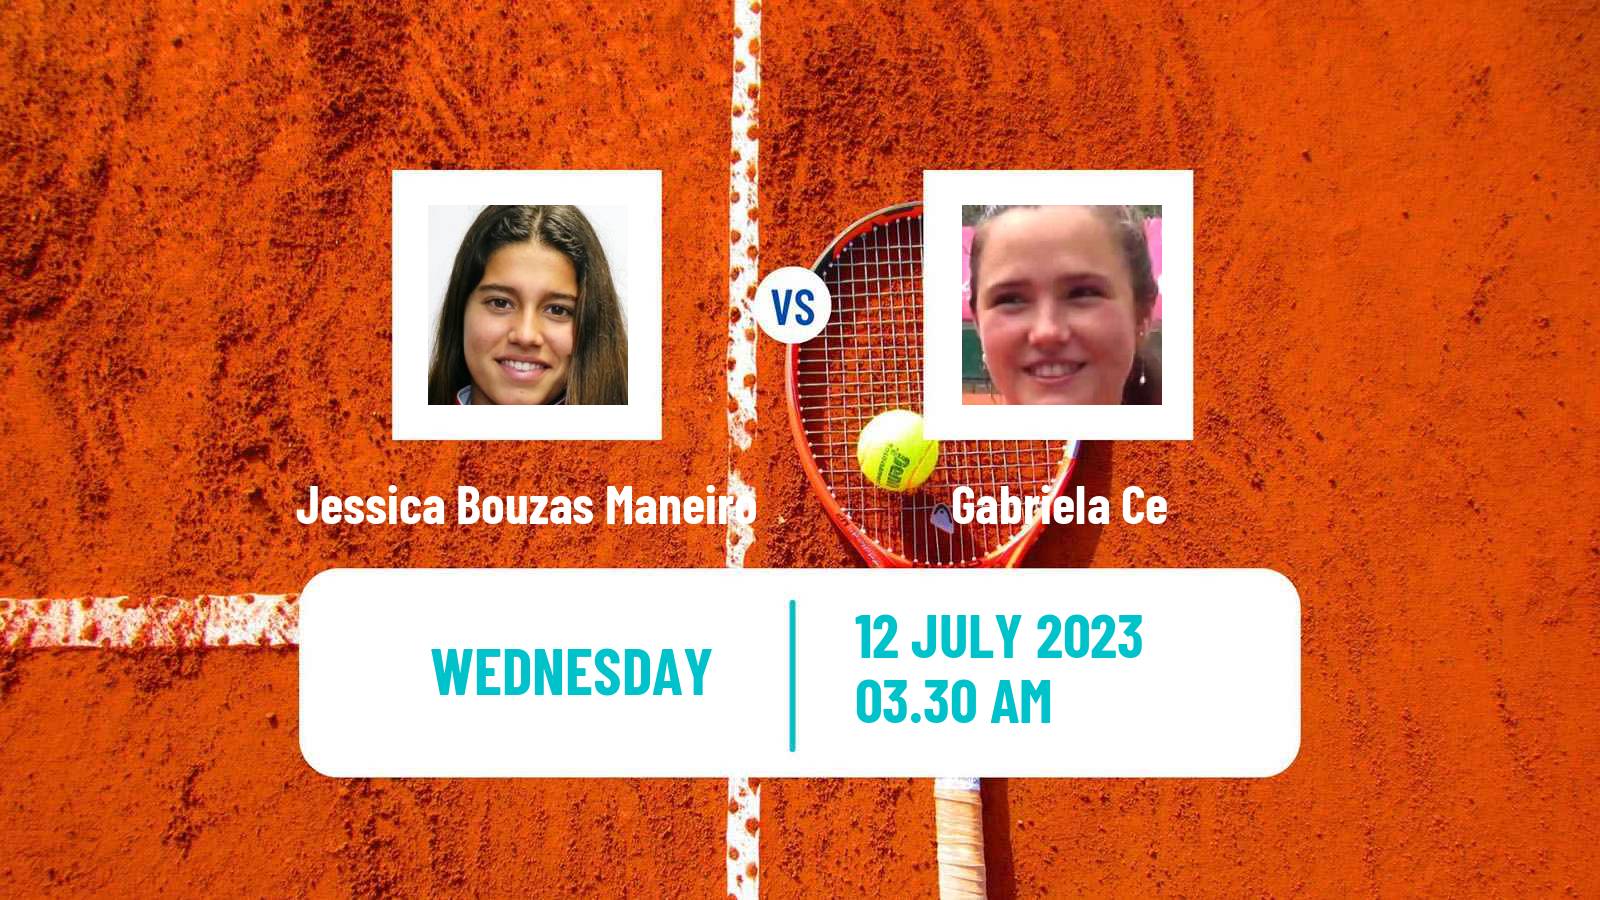 Tennis ITF W60 Rome 2 Women Jessica Bouzas Maneiro - Gabriela Ce